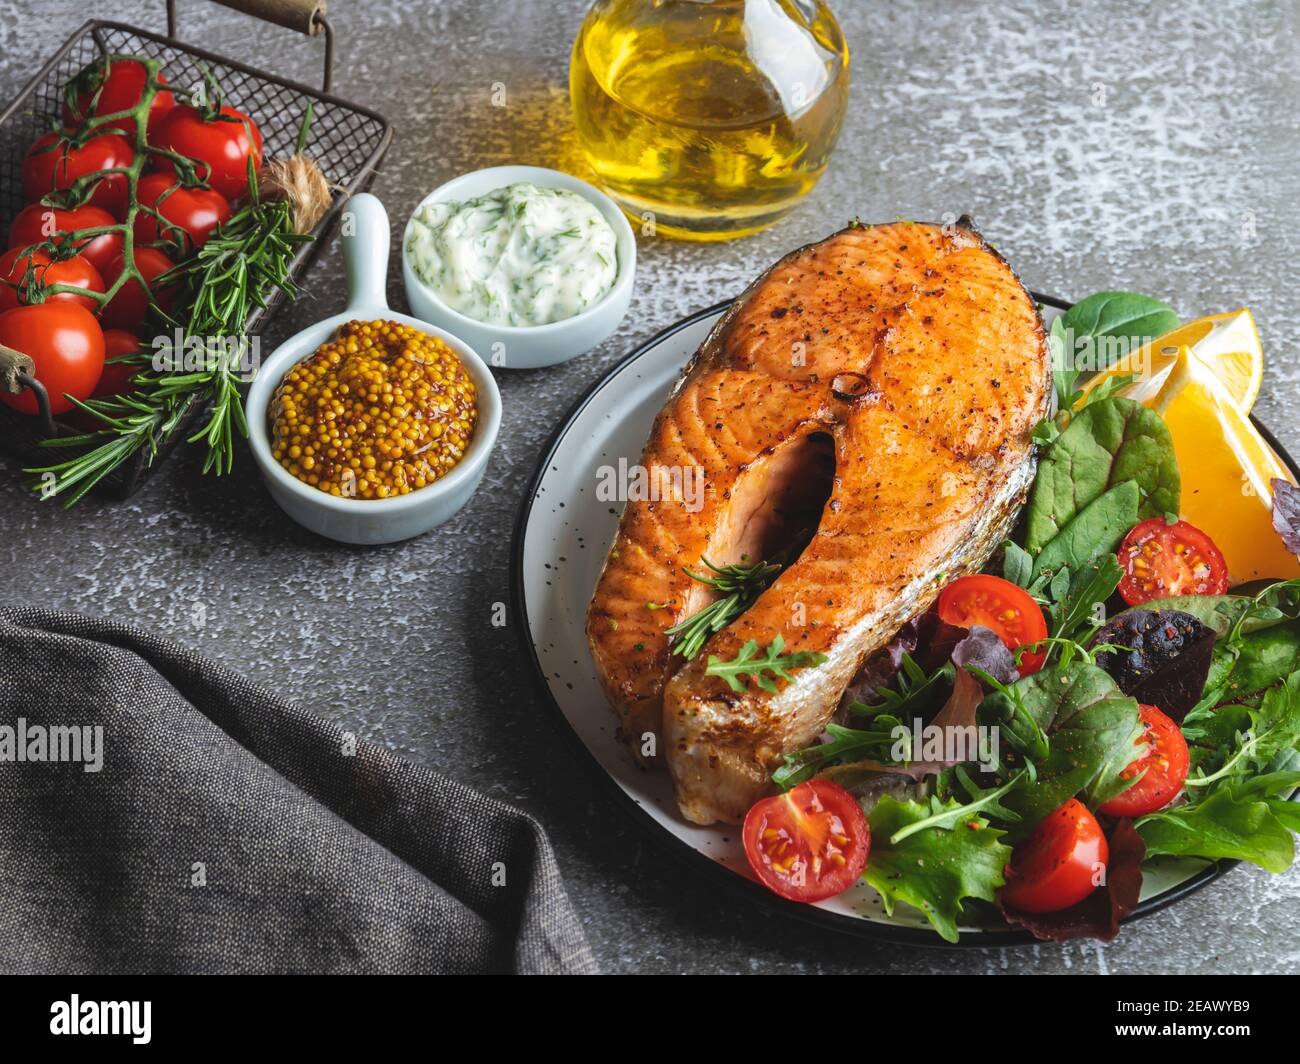 bistecca di salmone arrosto, fritto e al forno con insalata fresca e pomodori vista dall'alto Foto Stock